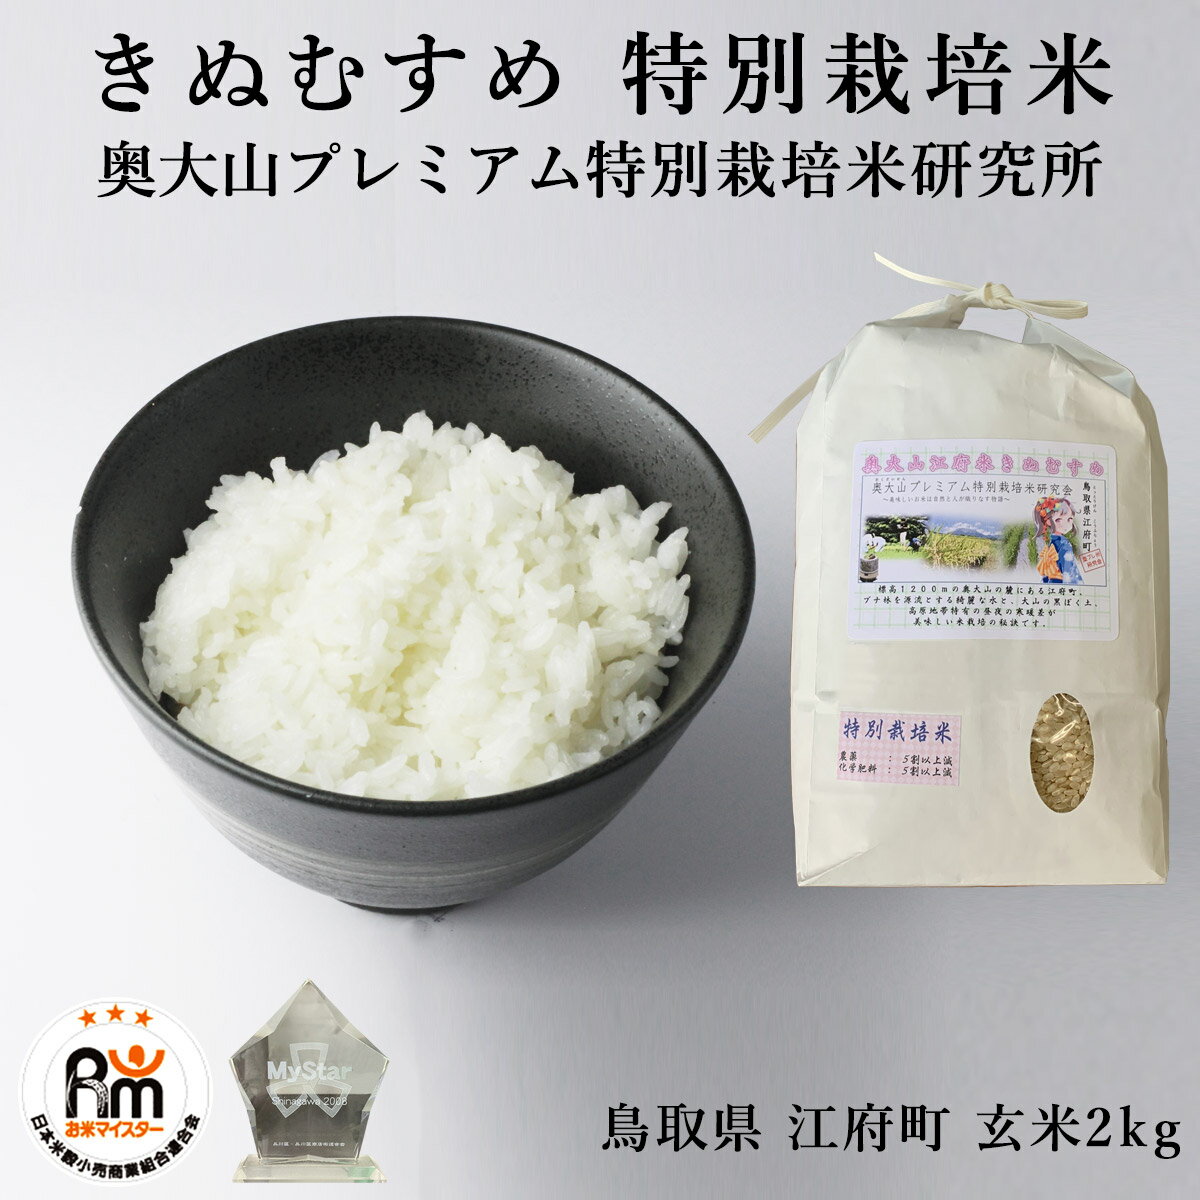 【お米マイスター厳選】米 お米 2kg 特別栽培米 きぬむす